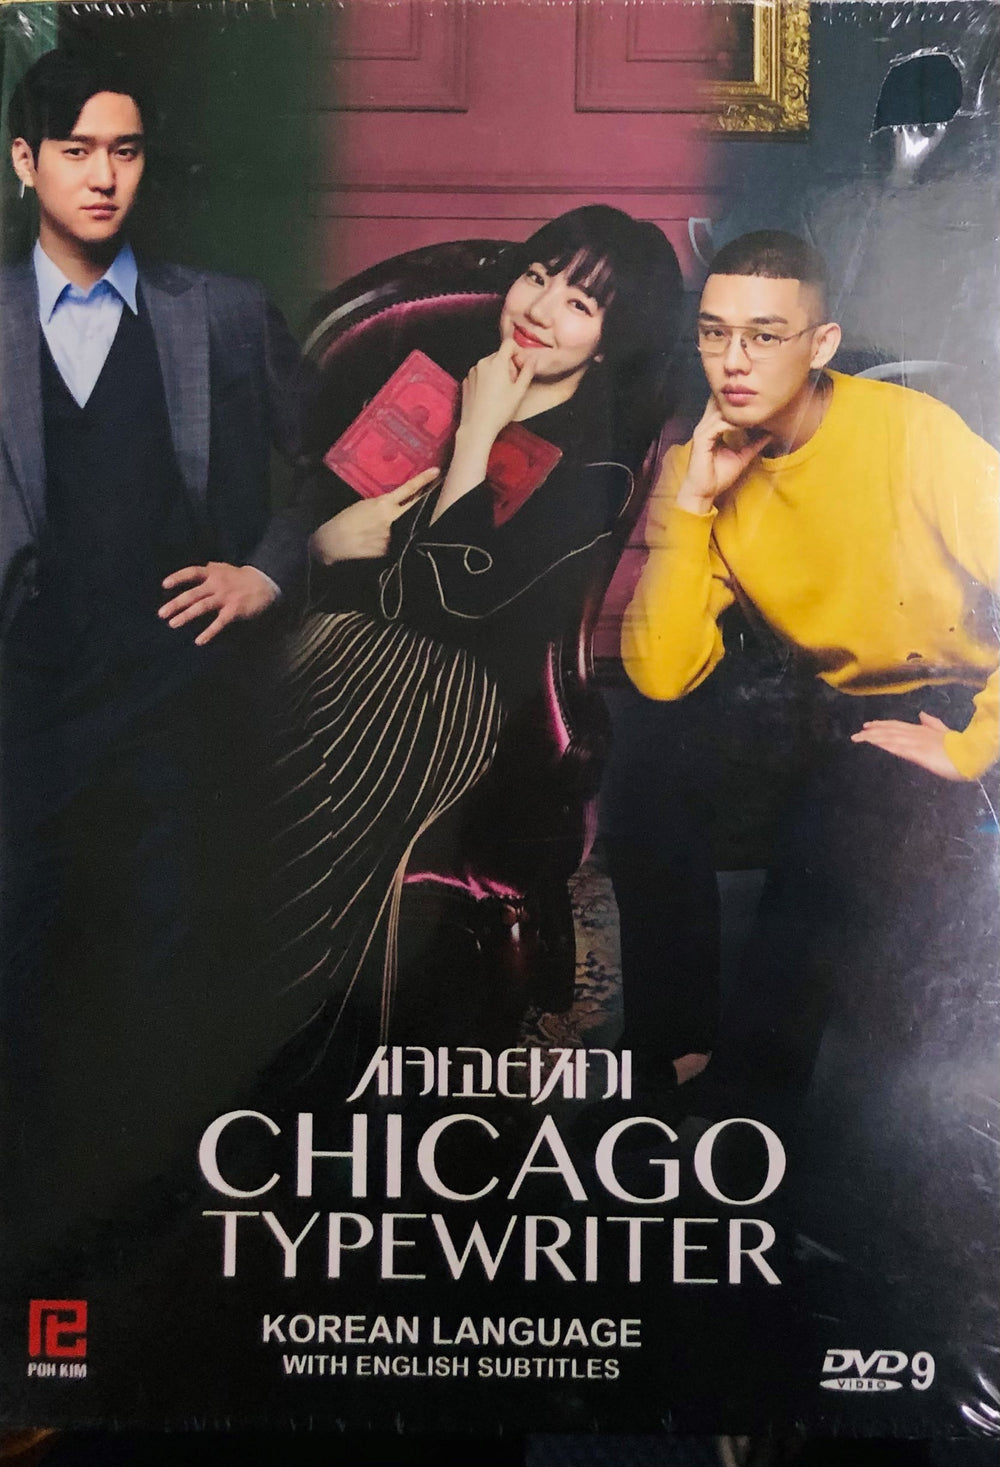 CHICAGO TYPEWRITER 2016 (Korean Drama) DVD 1-16 EPISODES ENGLISH SUBTITLES (REGION FREE)